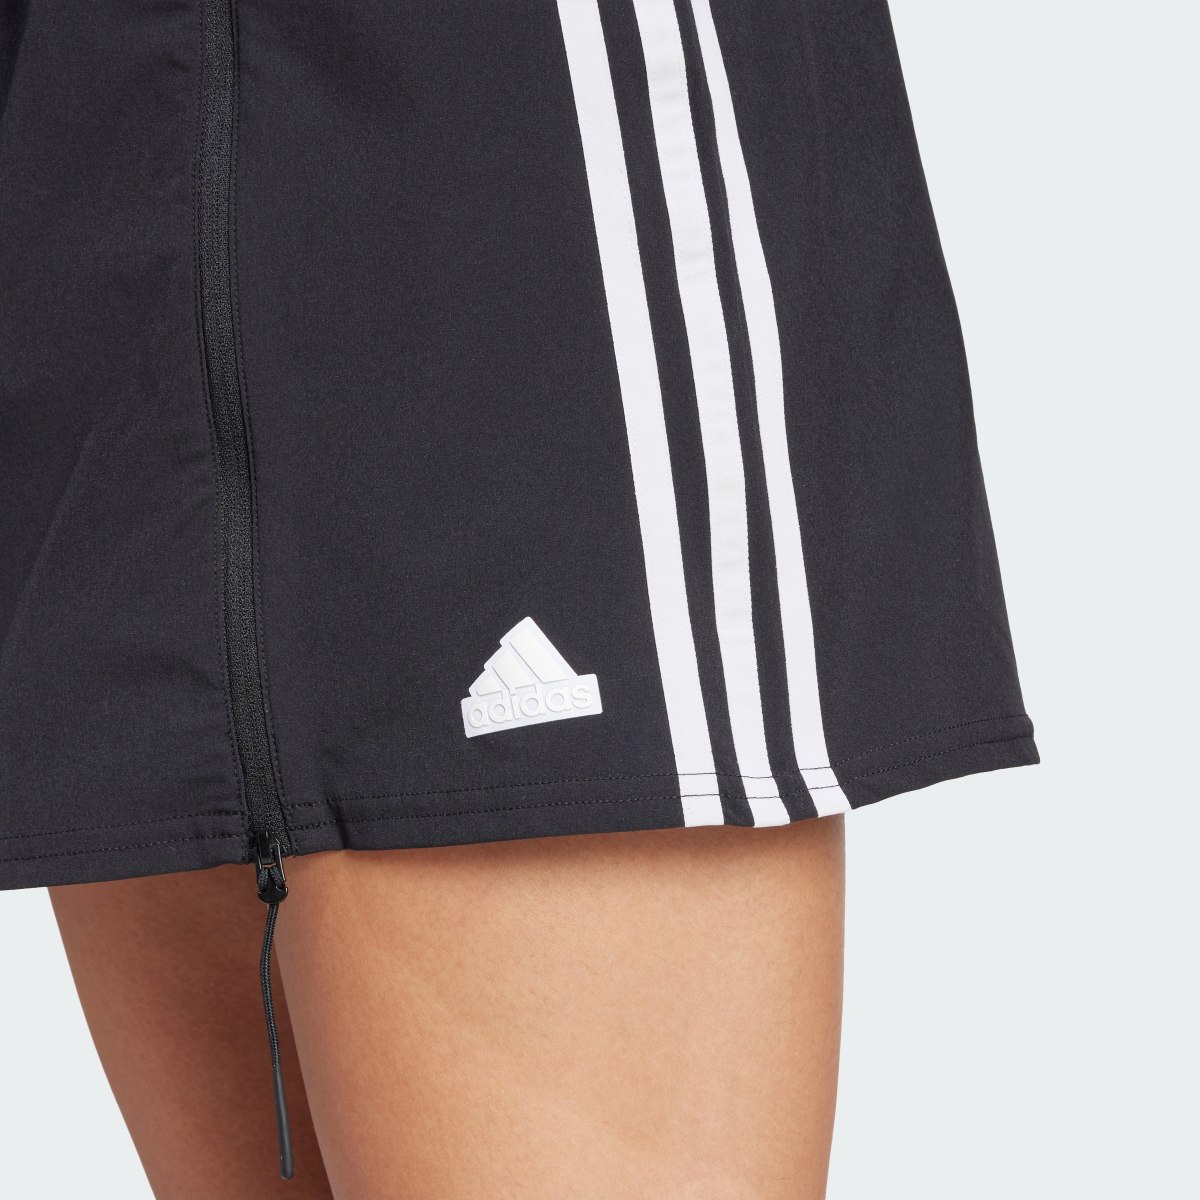 Adidas Express All-Gender Skirt. 5